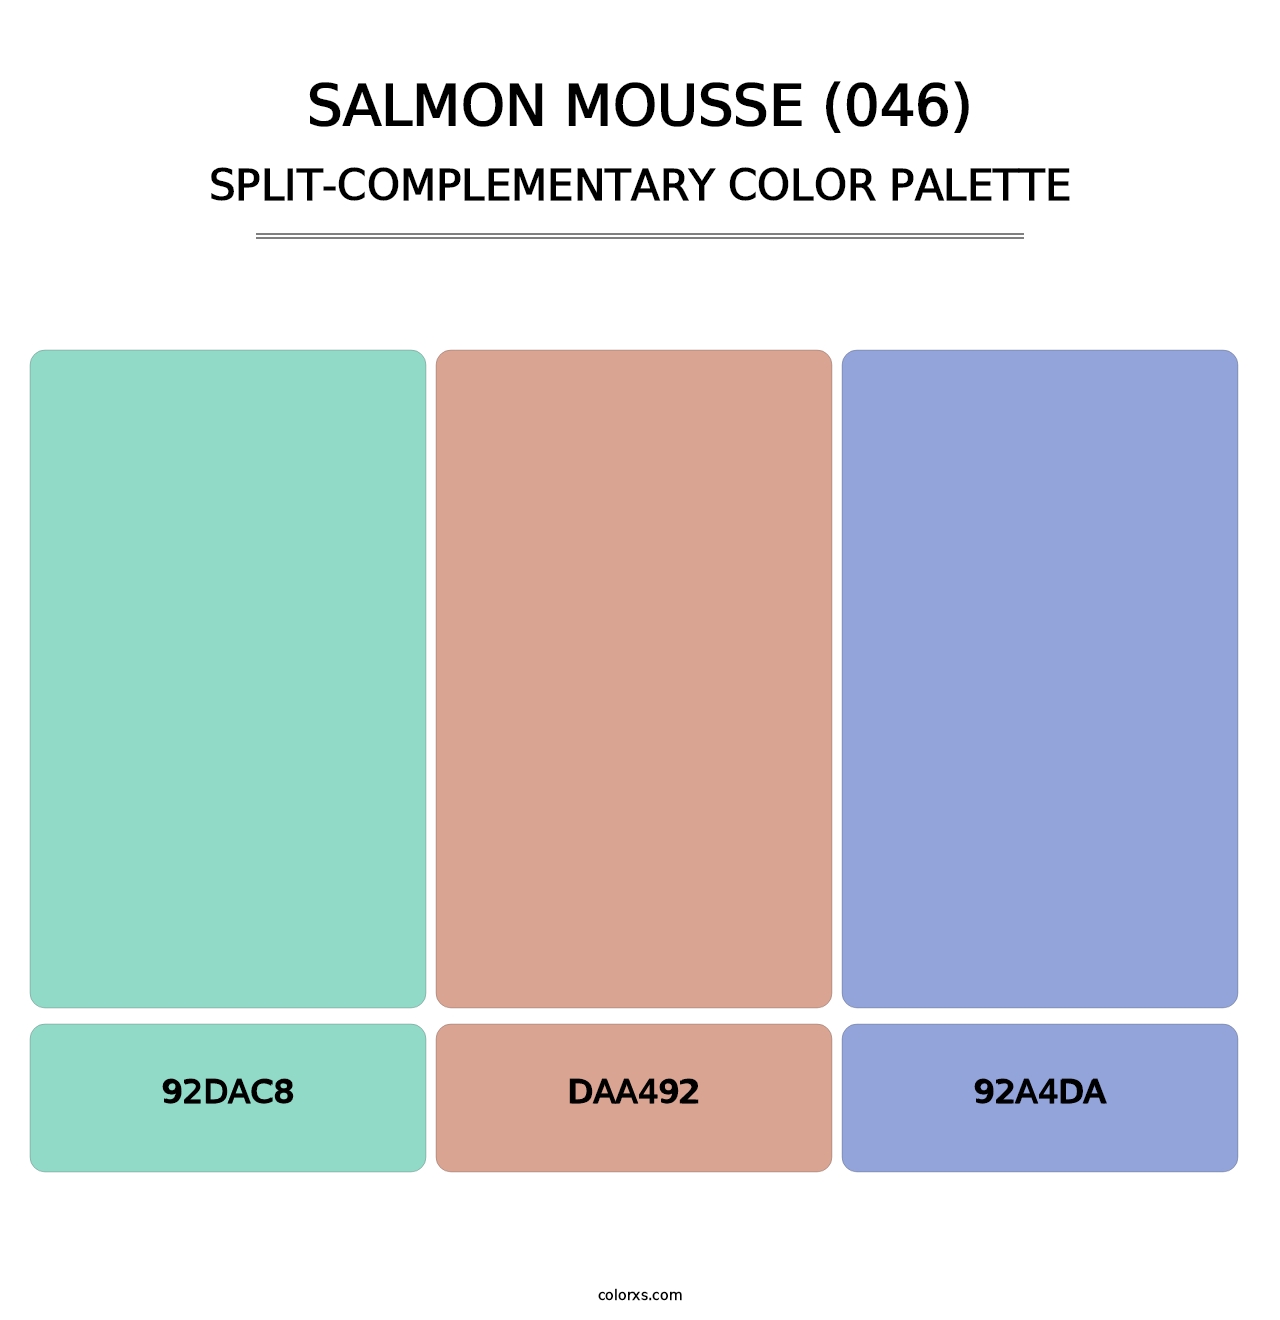 Salmon Mousse (046) - Split-Complementary Color Palette